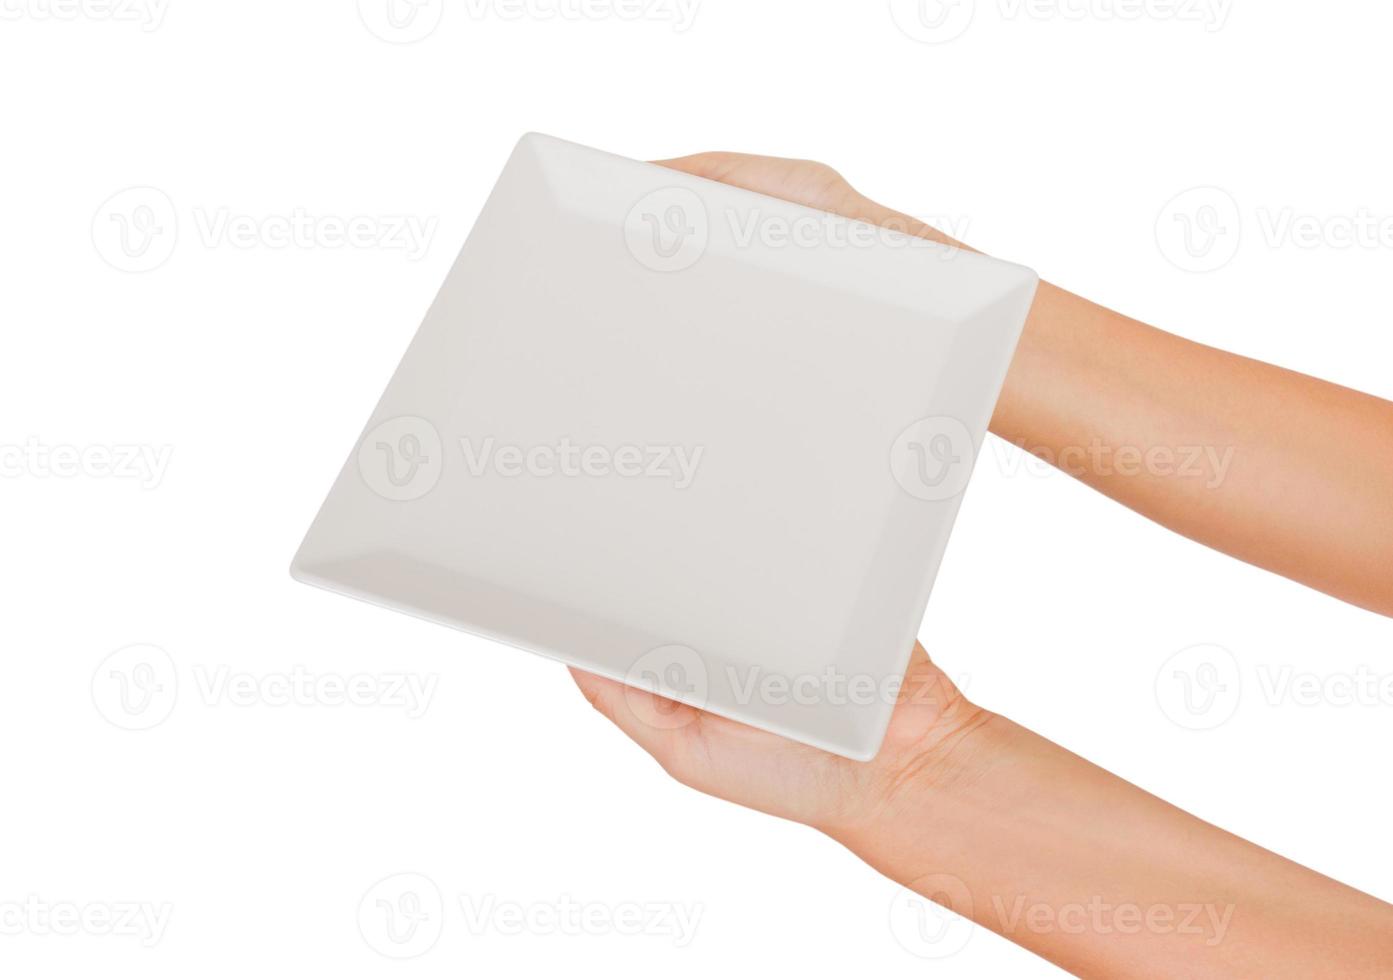 placa fosca quadrada branca em branco na mão feminina. vista em perspectiva, isolada no fundo branco foto